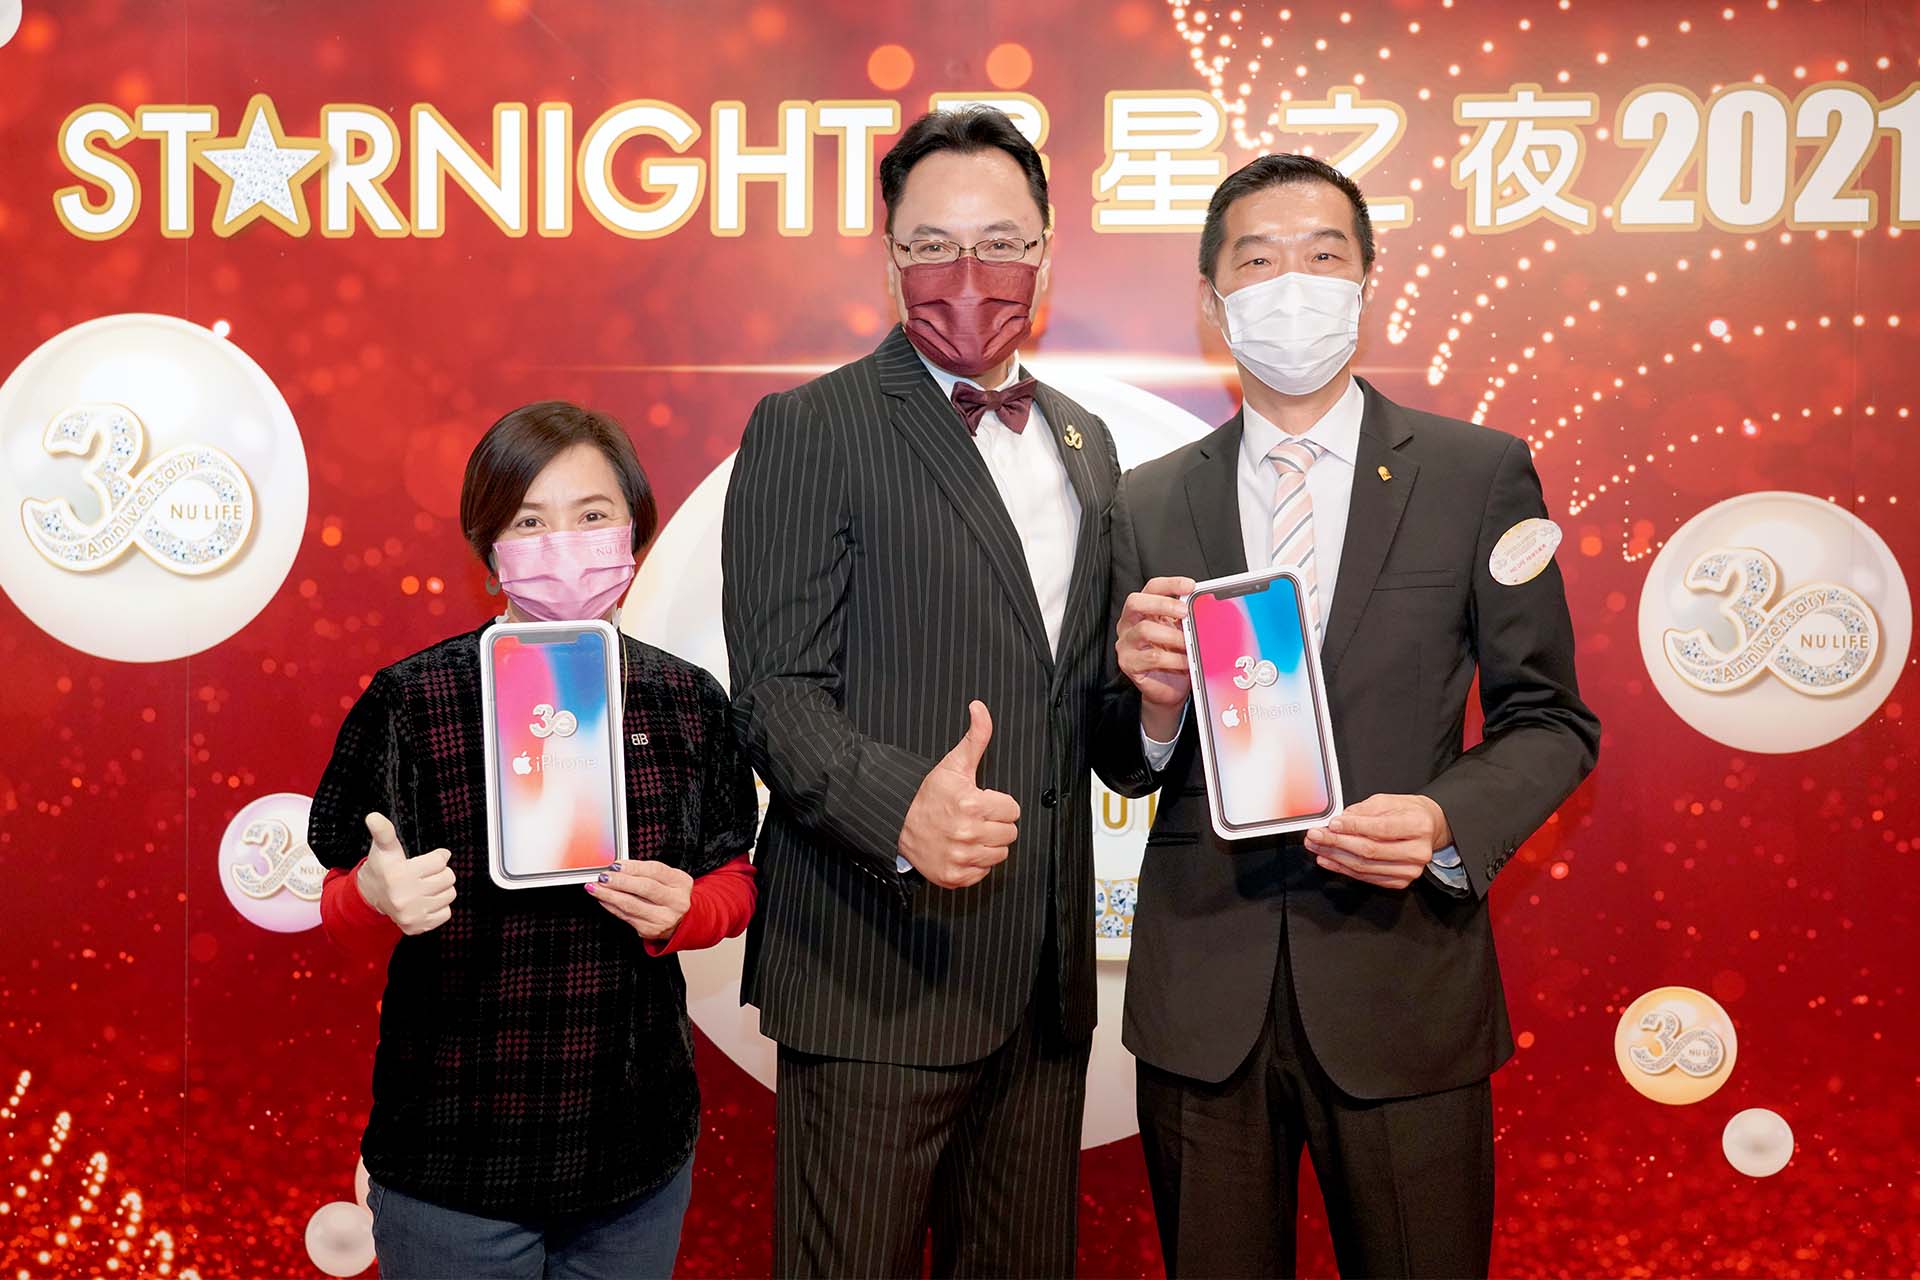 月月在Phone 月月送NU LIFE 30週年iphone 大抽獎得獎者 – 劉美娟小姐(左)及巫志賢先生(右)